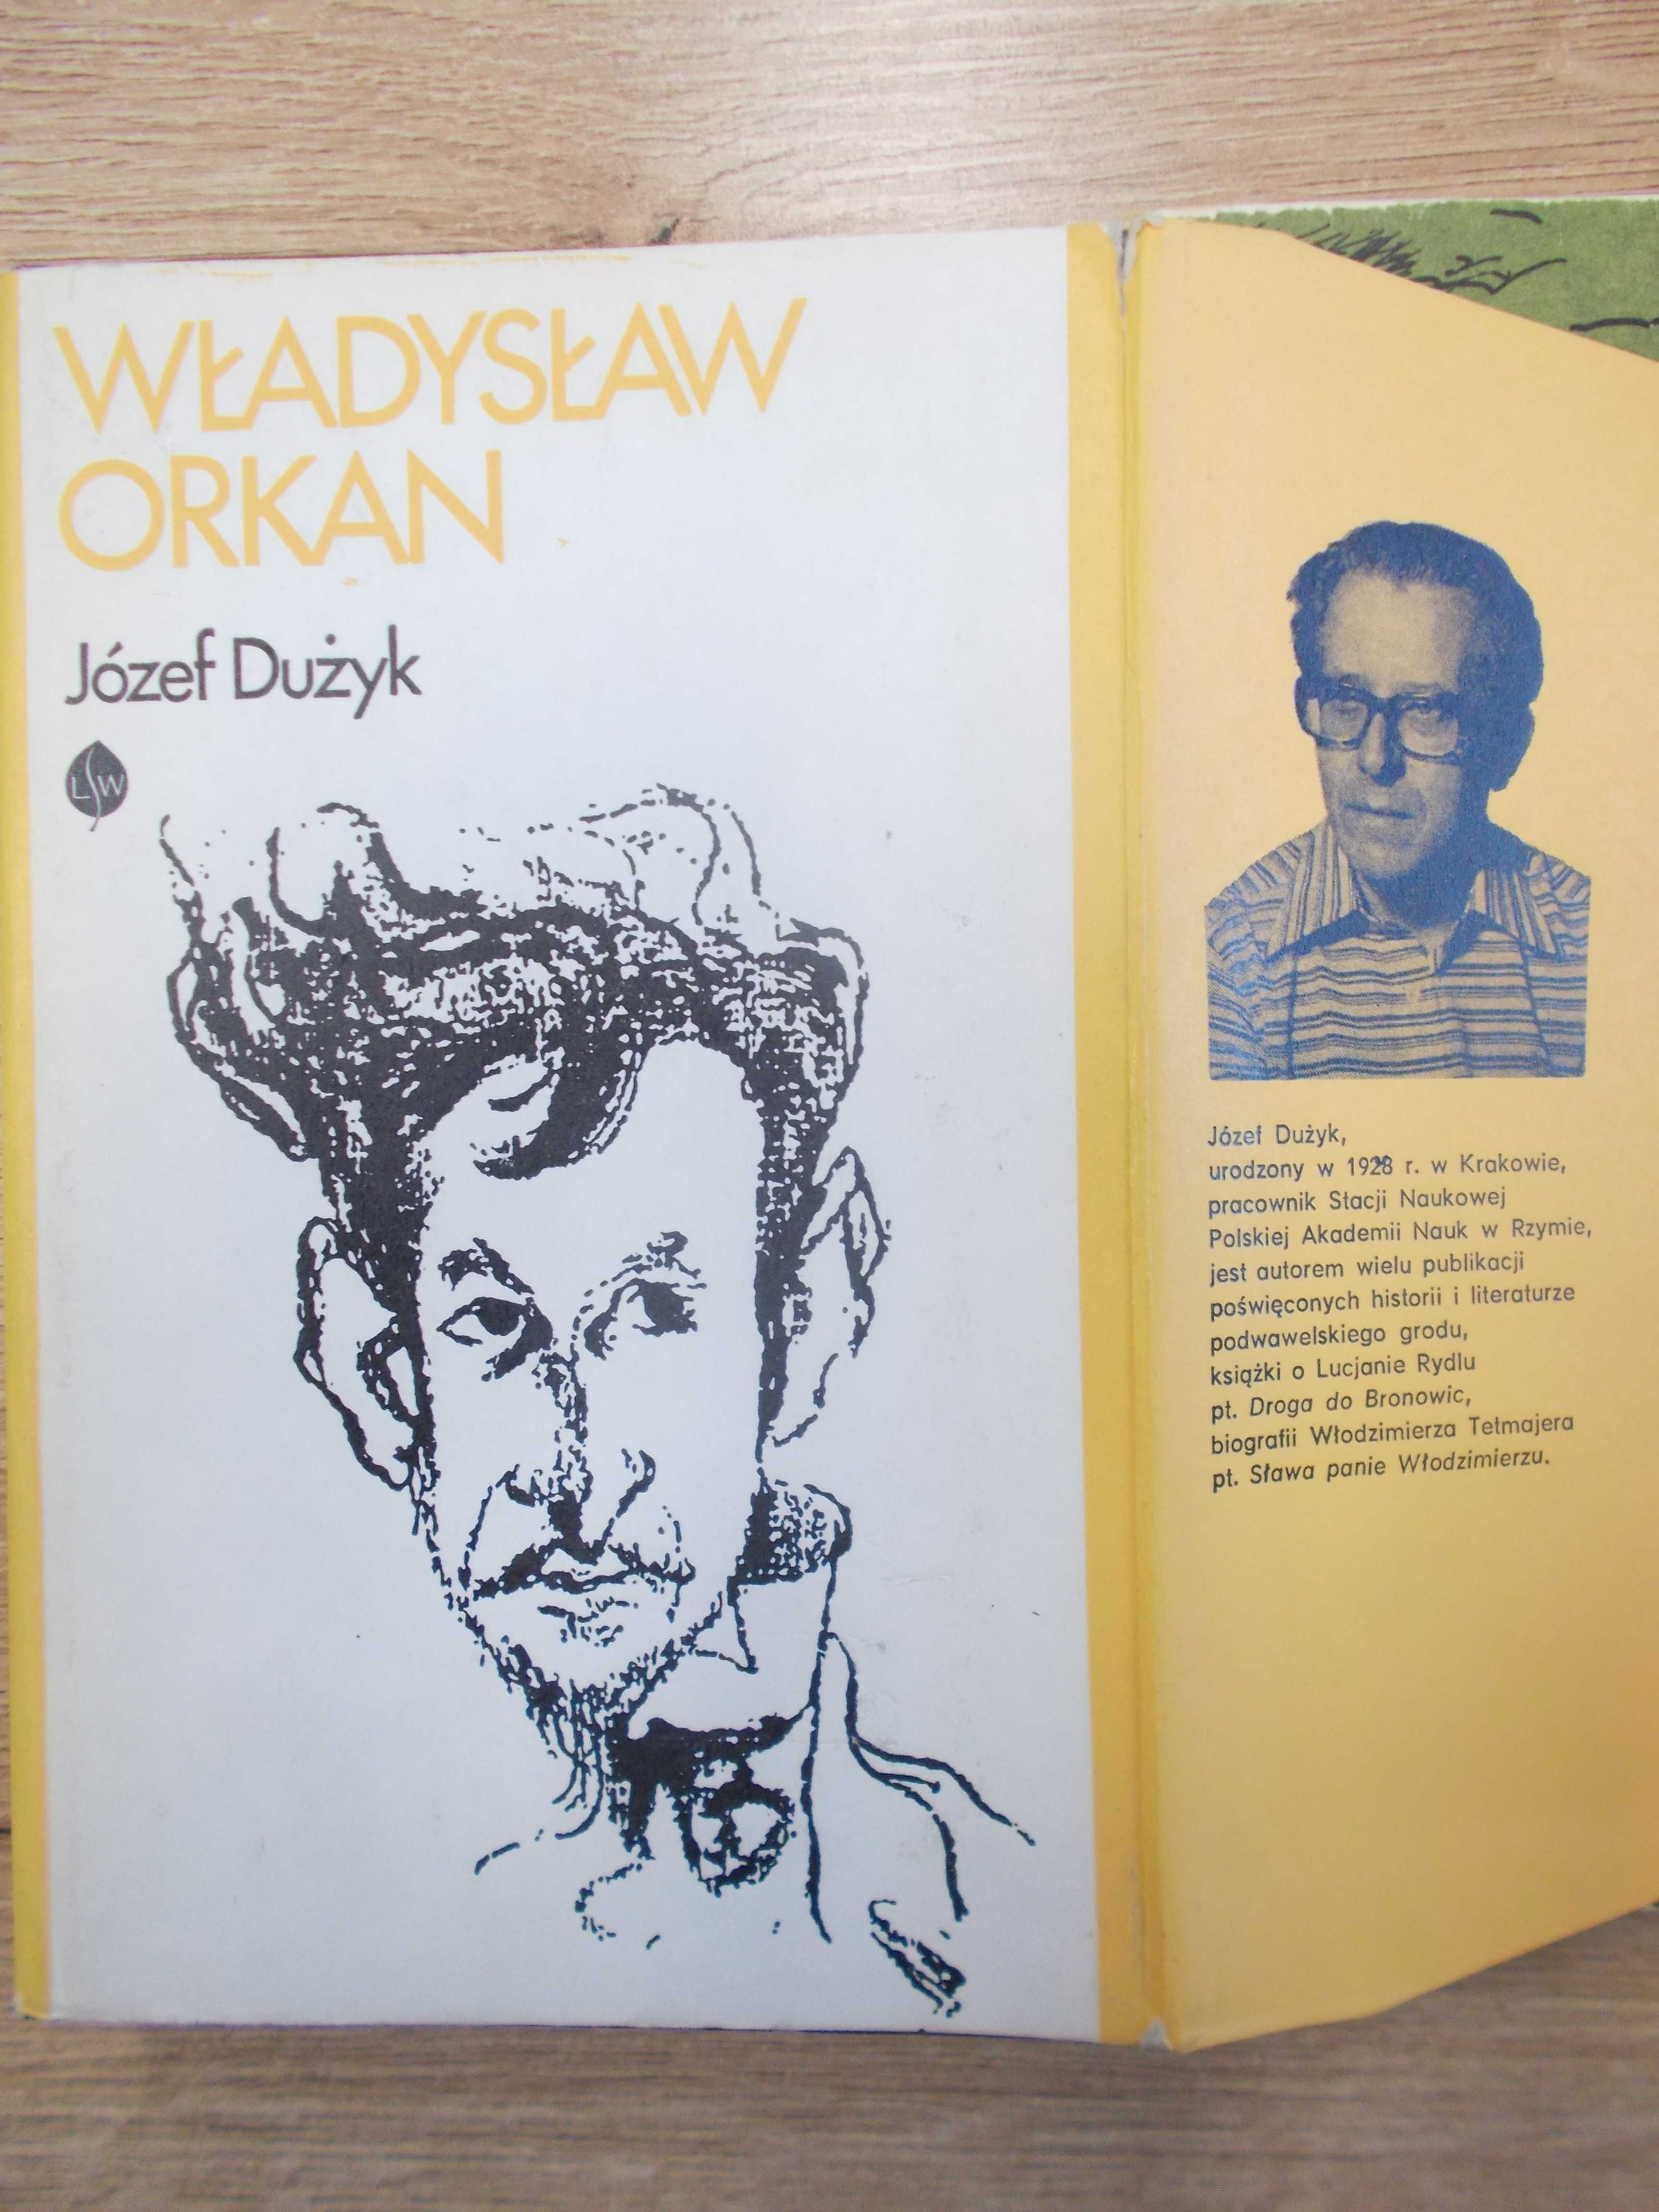 Władysław Orkan - biografia pisarza i malarza